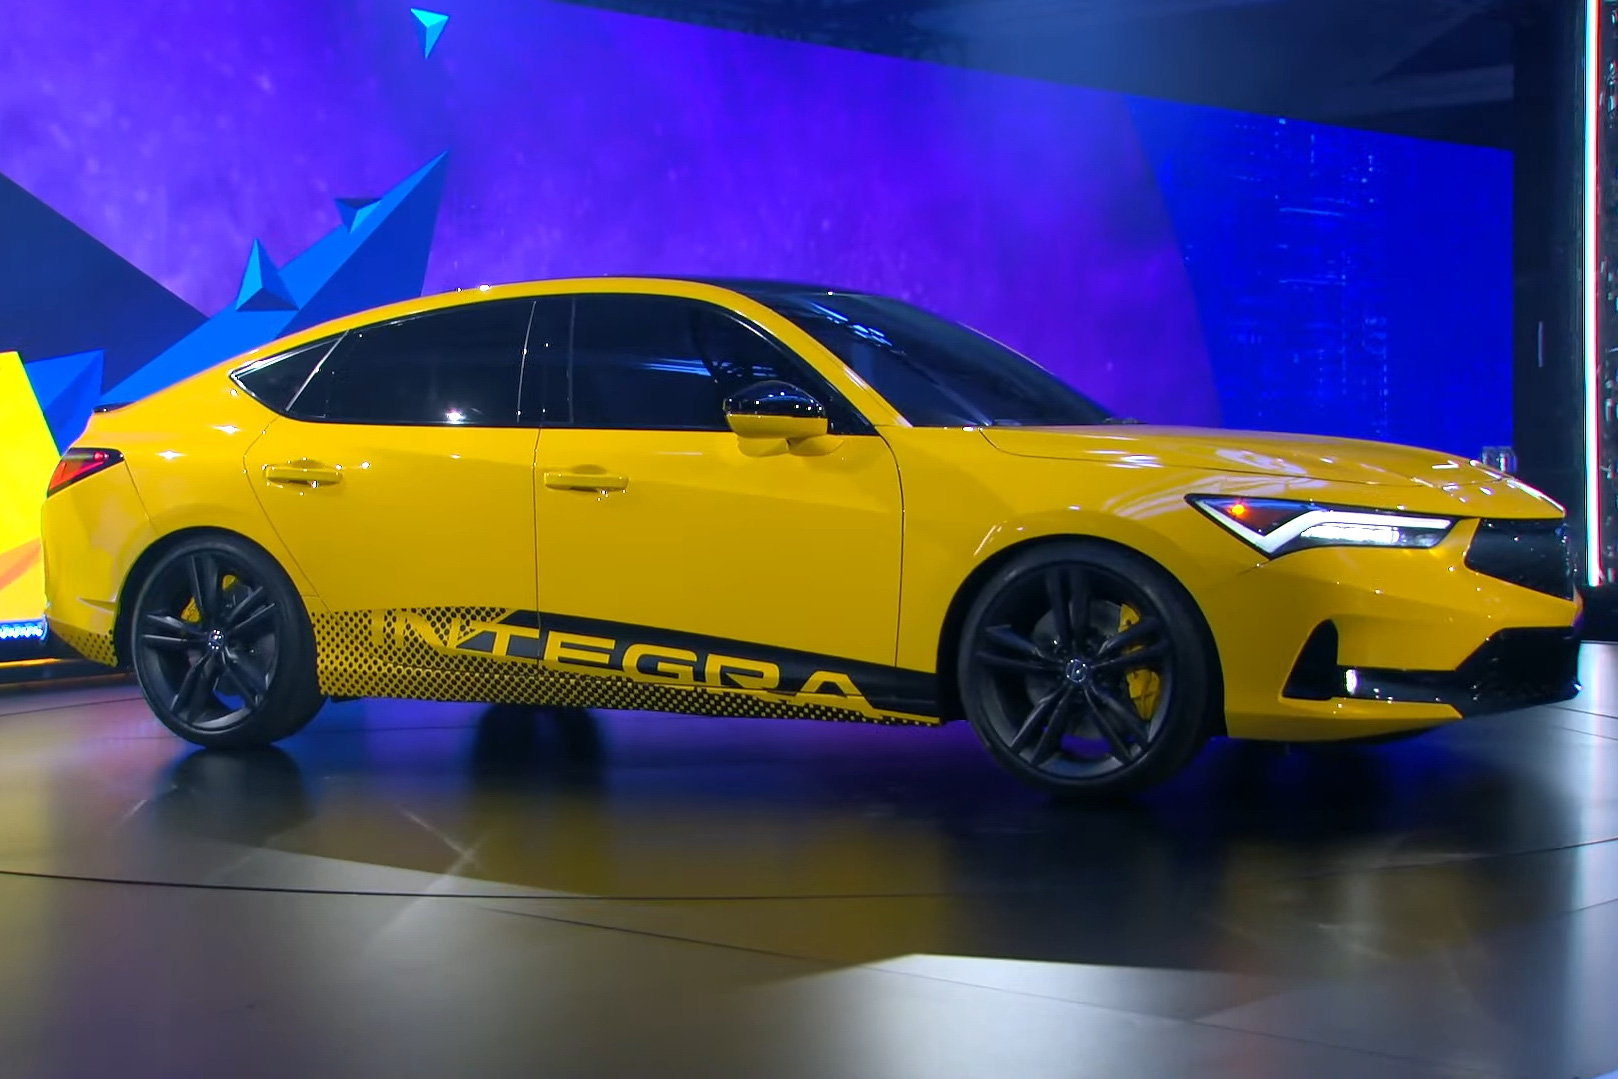 Ra mắt Acura Integra 2022 - 'Honda Civic phiên bản hạng sang' giá quy đổi từ 680 triệu đồng